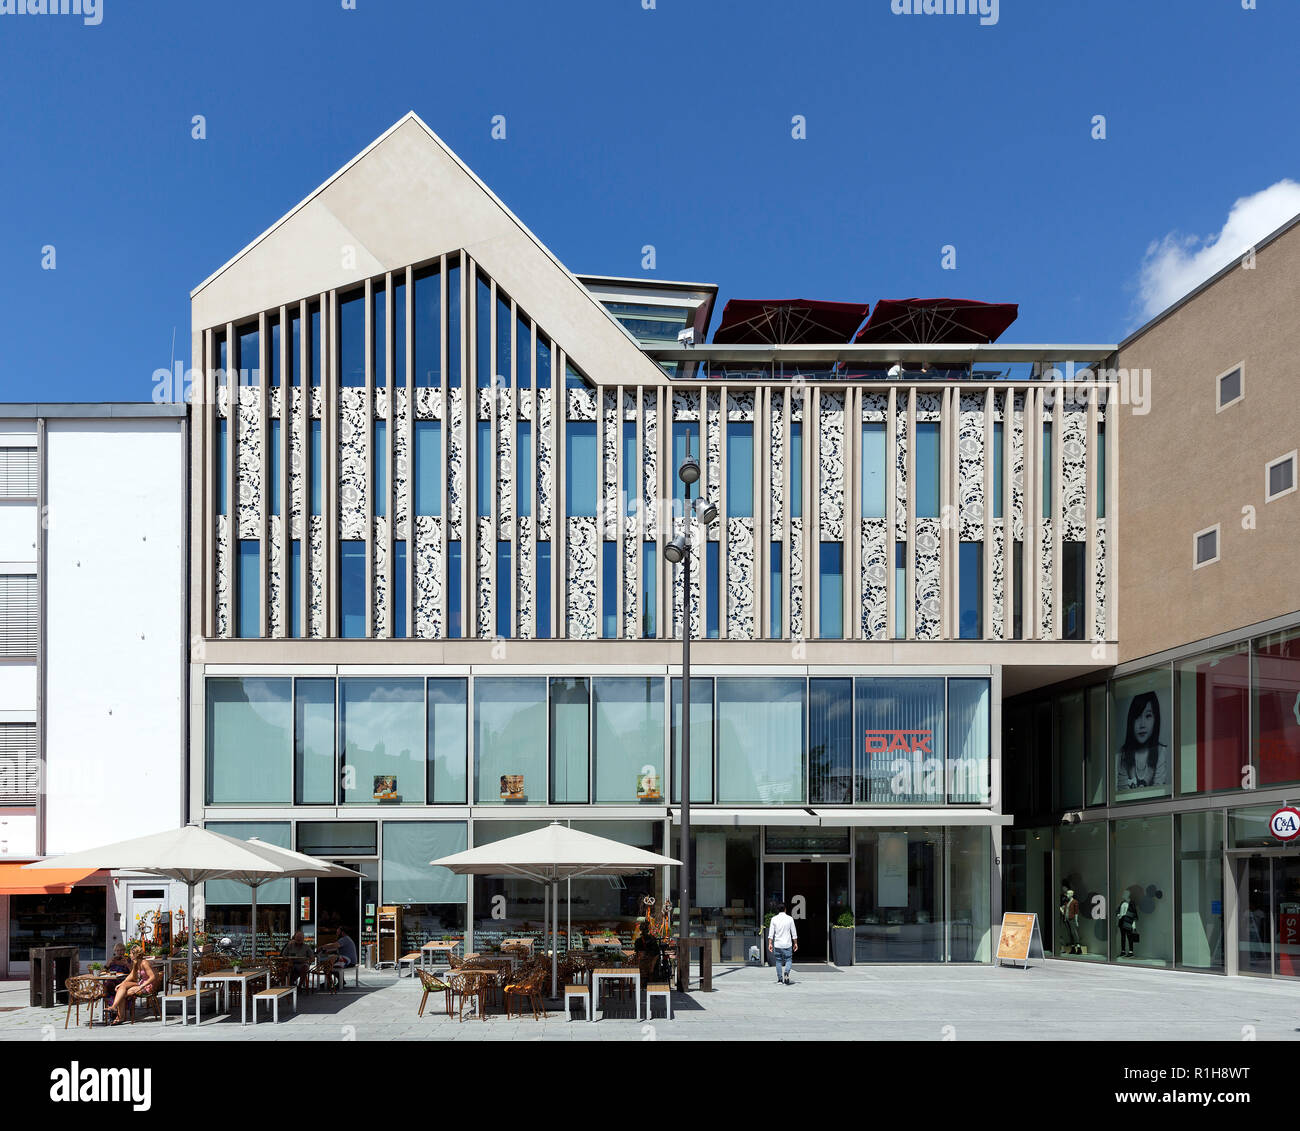 Neue Schranne avec les magasins, les bureaux et les pratiques, l'ensemble de l'architecture contemporaine dans la vieille ville de Memmingen Memmingen, Banque D'Images